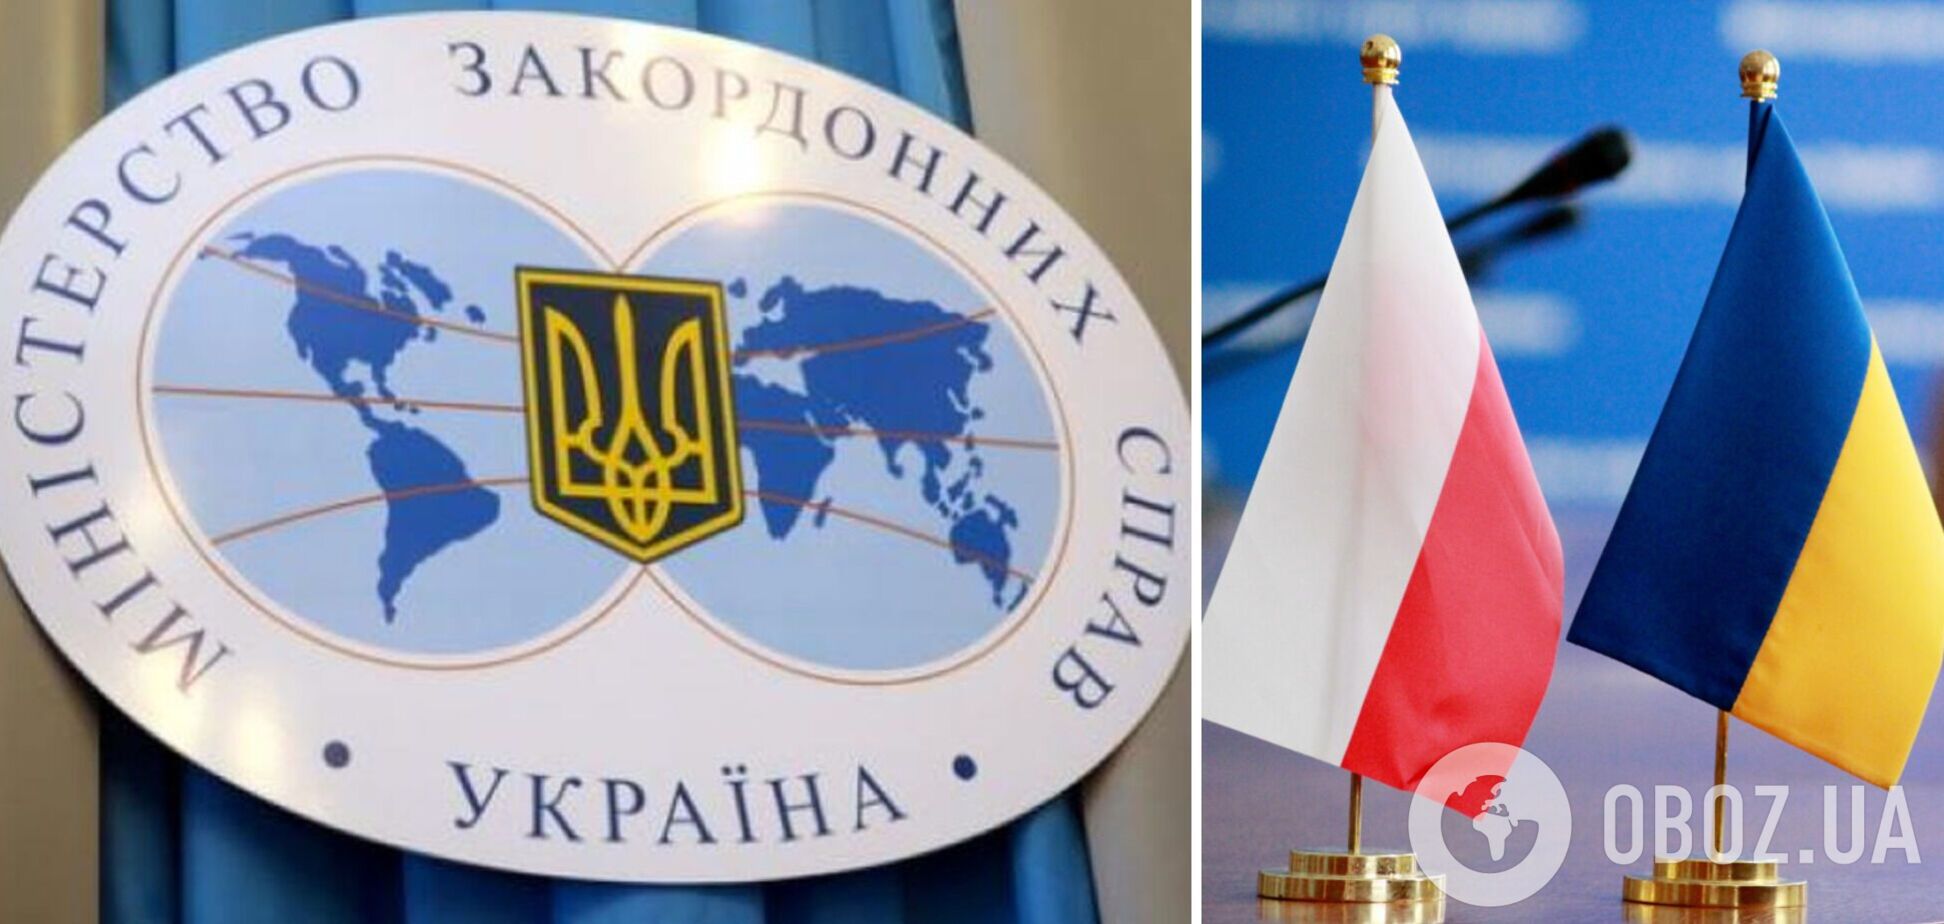 Польські ЗМІ розганяють інформацію, що Україні пообіцяли швидкий вступ до ЄС в обмін на повалення уряду Польщі: в МЗС відреагували